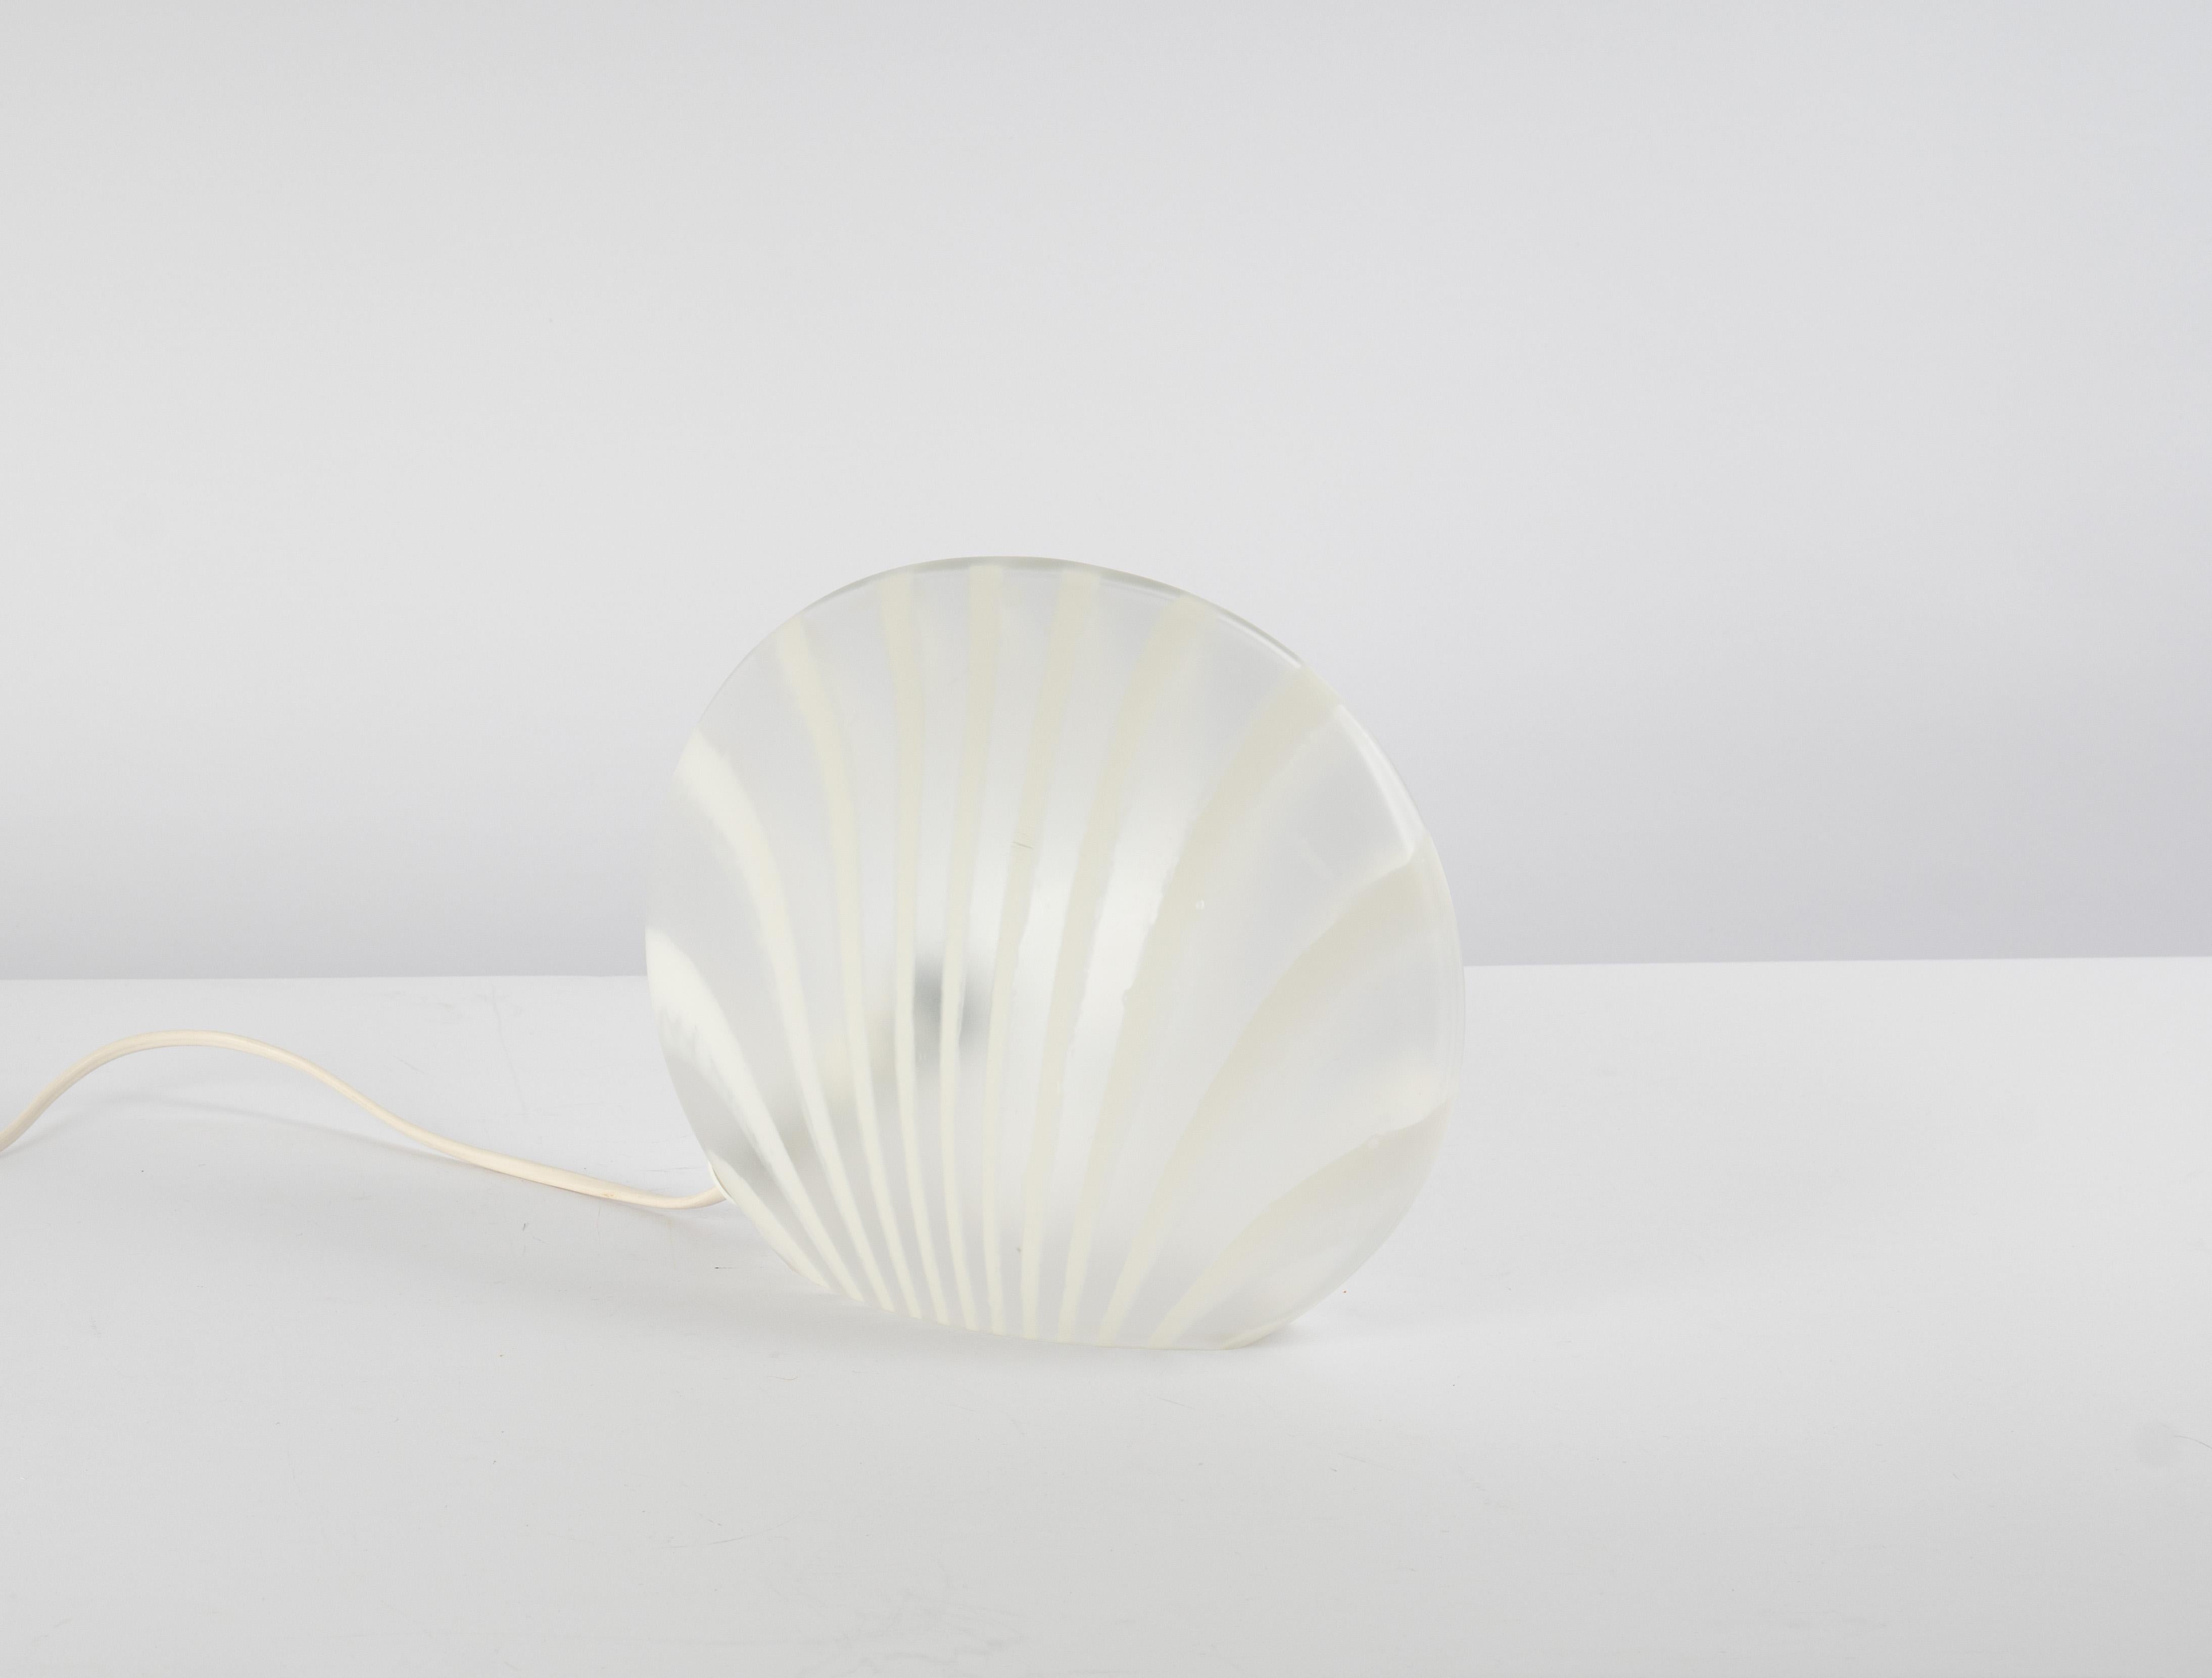 Merveilleuse lampe de table à motif zébré de Peill & Putzler, Allemagne, années 1970. Fabriqué en une seule pièce.
Le corps en verre est superbe et sa qualité tranchante contraste joliment avec la surface lisse.

La lampe de table nécessite 1x